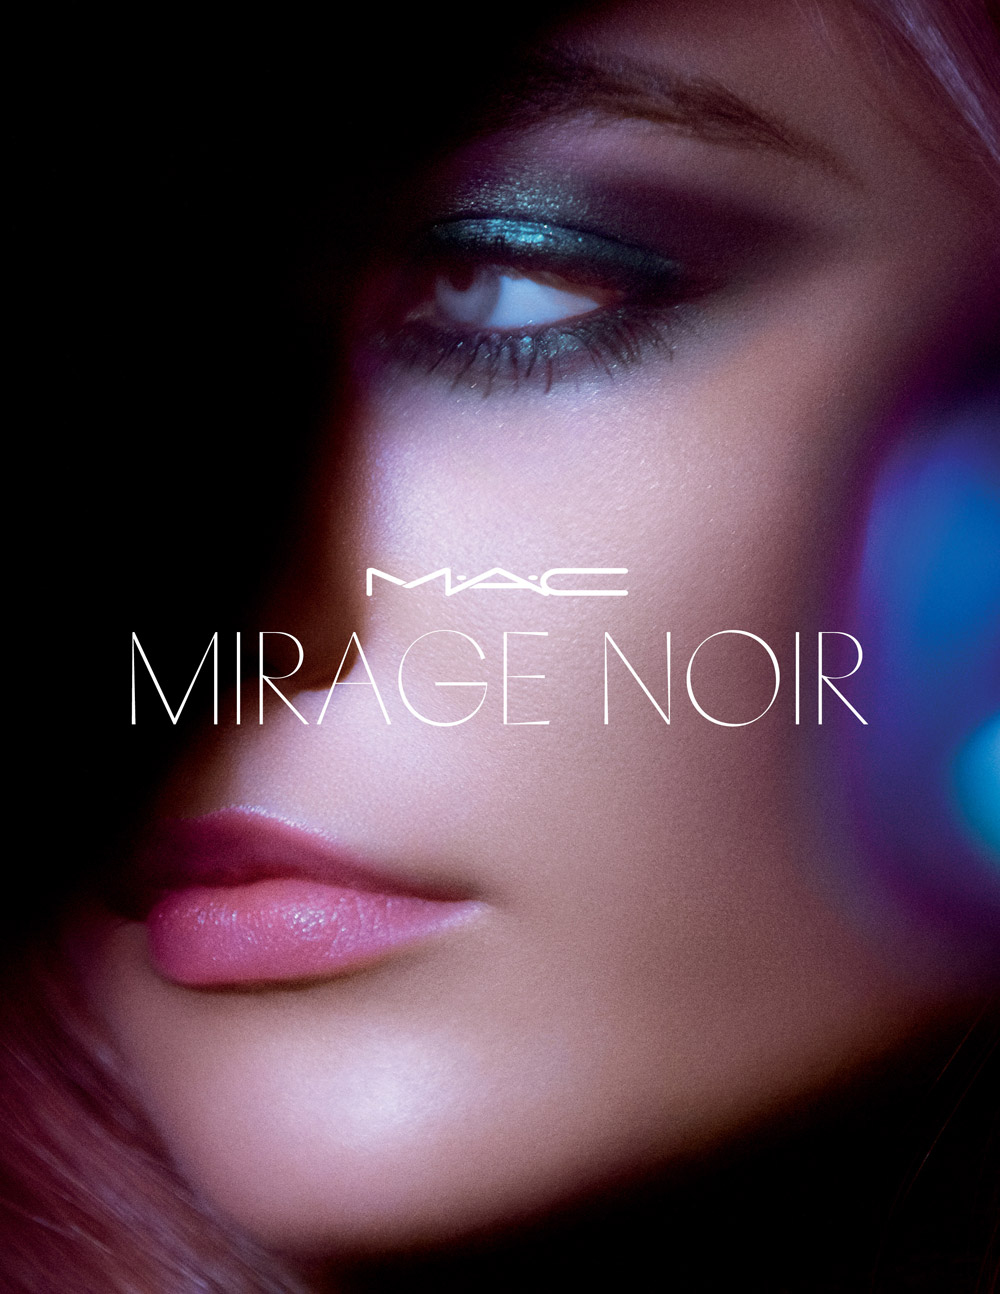 Die limitierte Sommerkollektion Mirage Noir von Mac Cosmetics ist inspiriert von schwülen Sommernächten.